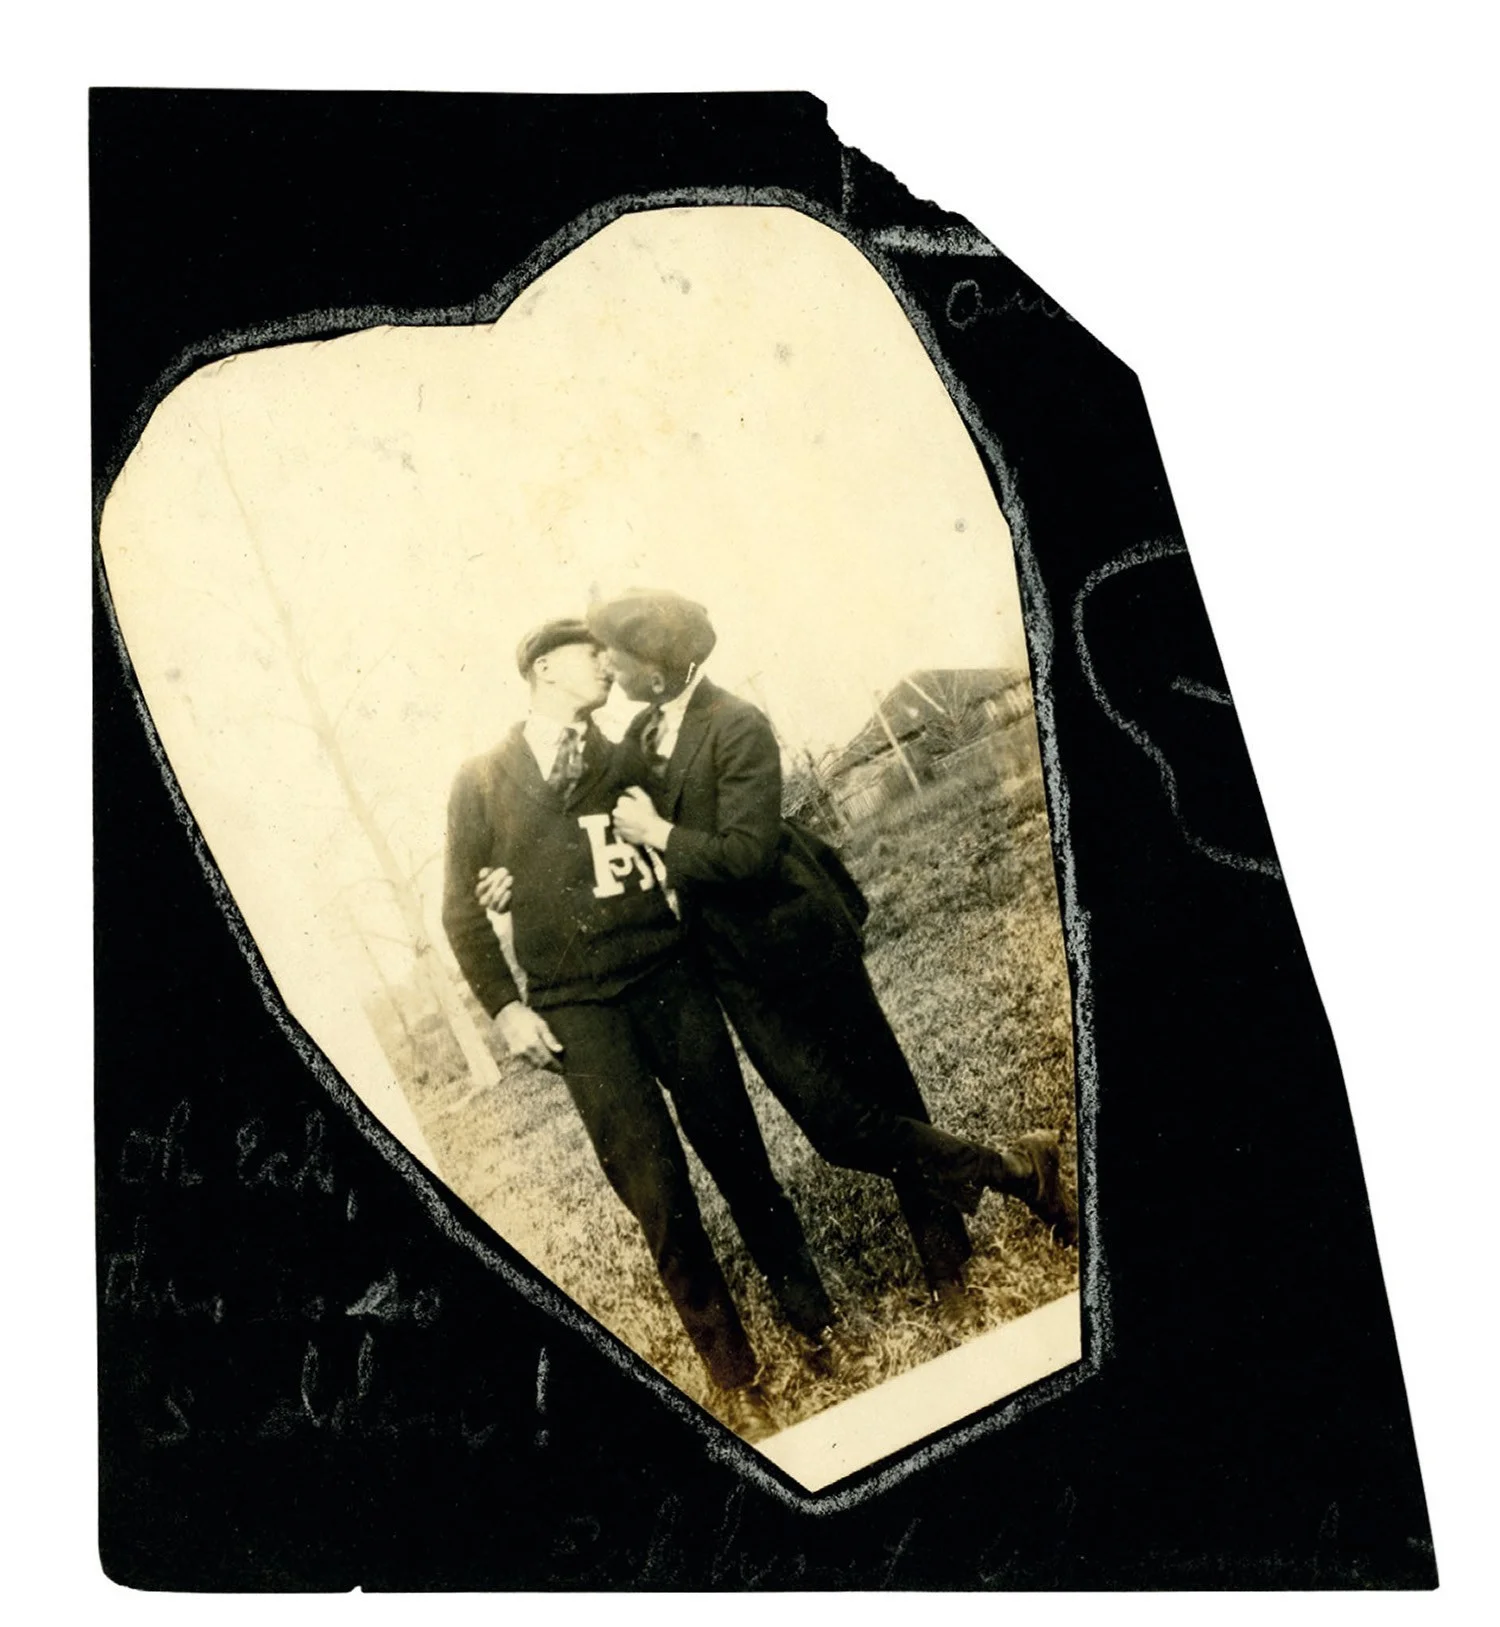 Машина времени: архивные фото о том, как целовались влюбленные 100 лет назад - фото 486026